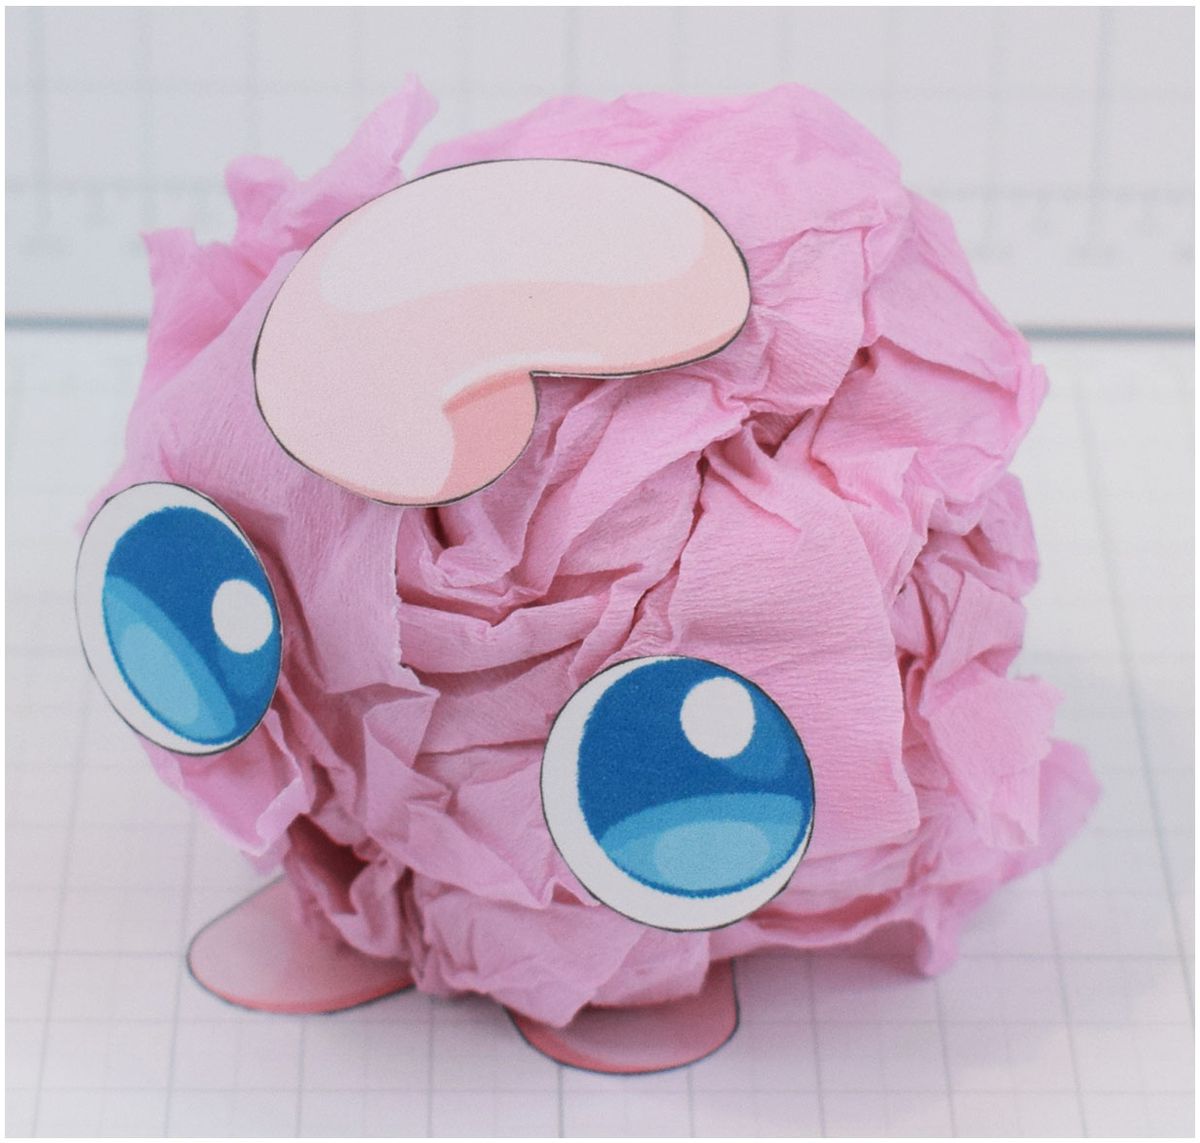 Paper Ball Jigglypuff process 3/4